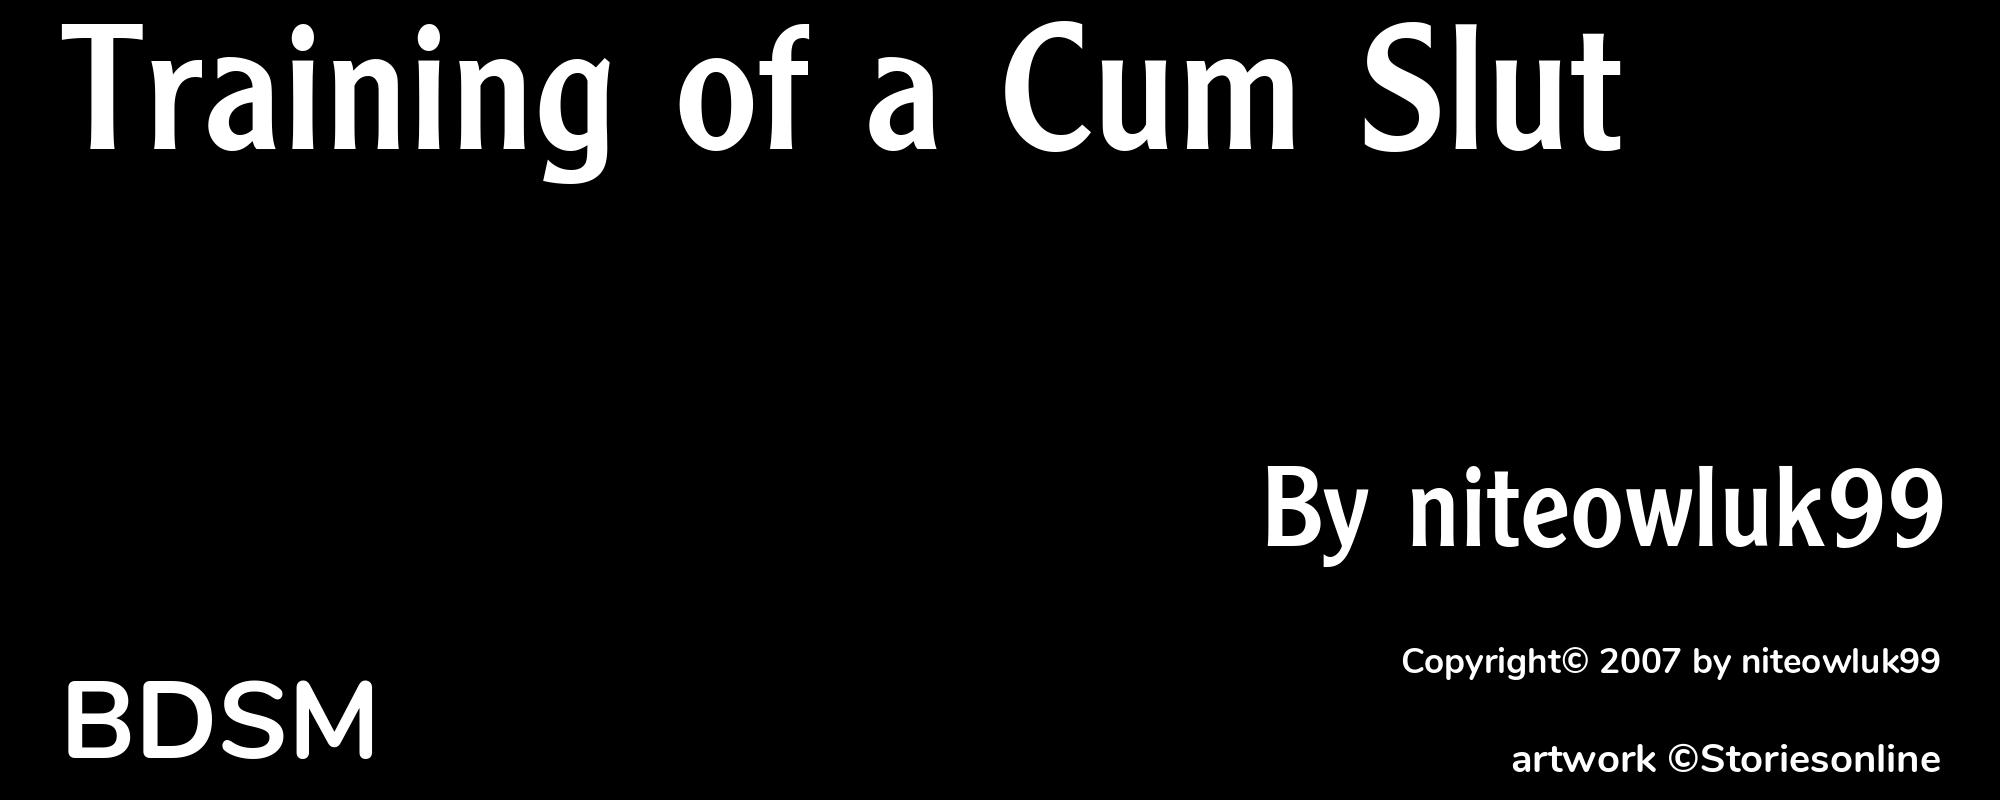 Training of a Cum Slut  - Cover